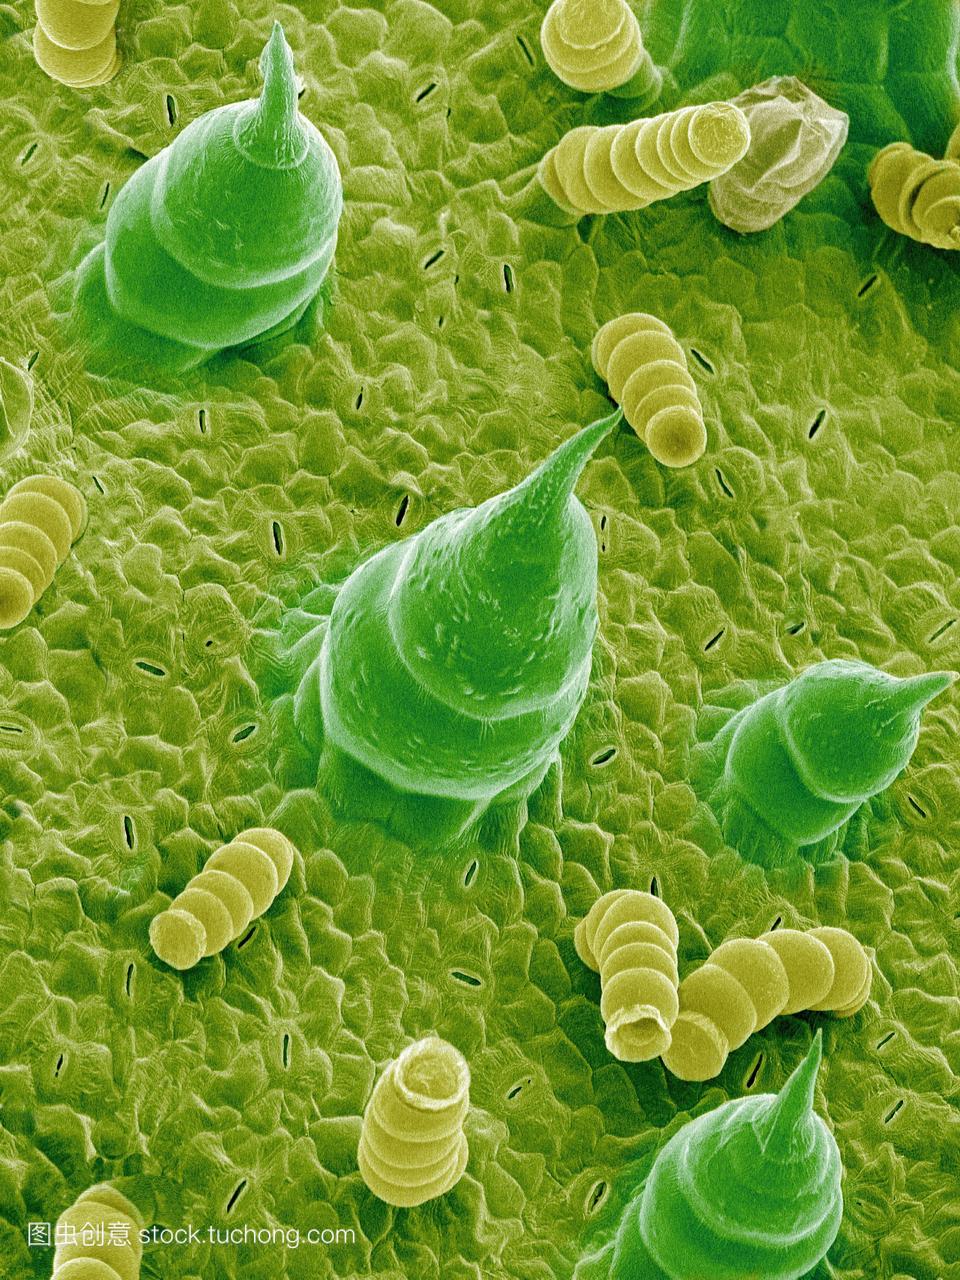 子显微图向日葵。绿色和黄色的结构是毛状体,